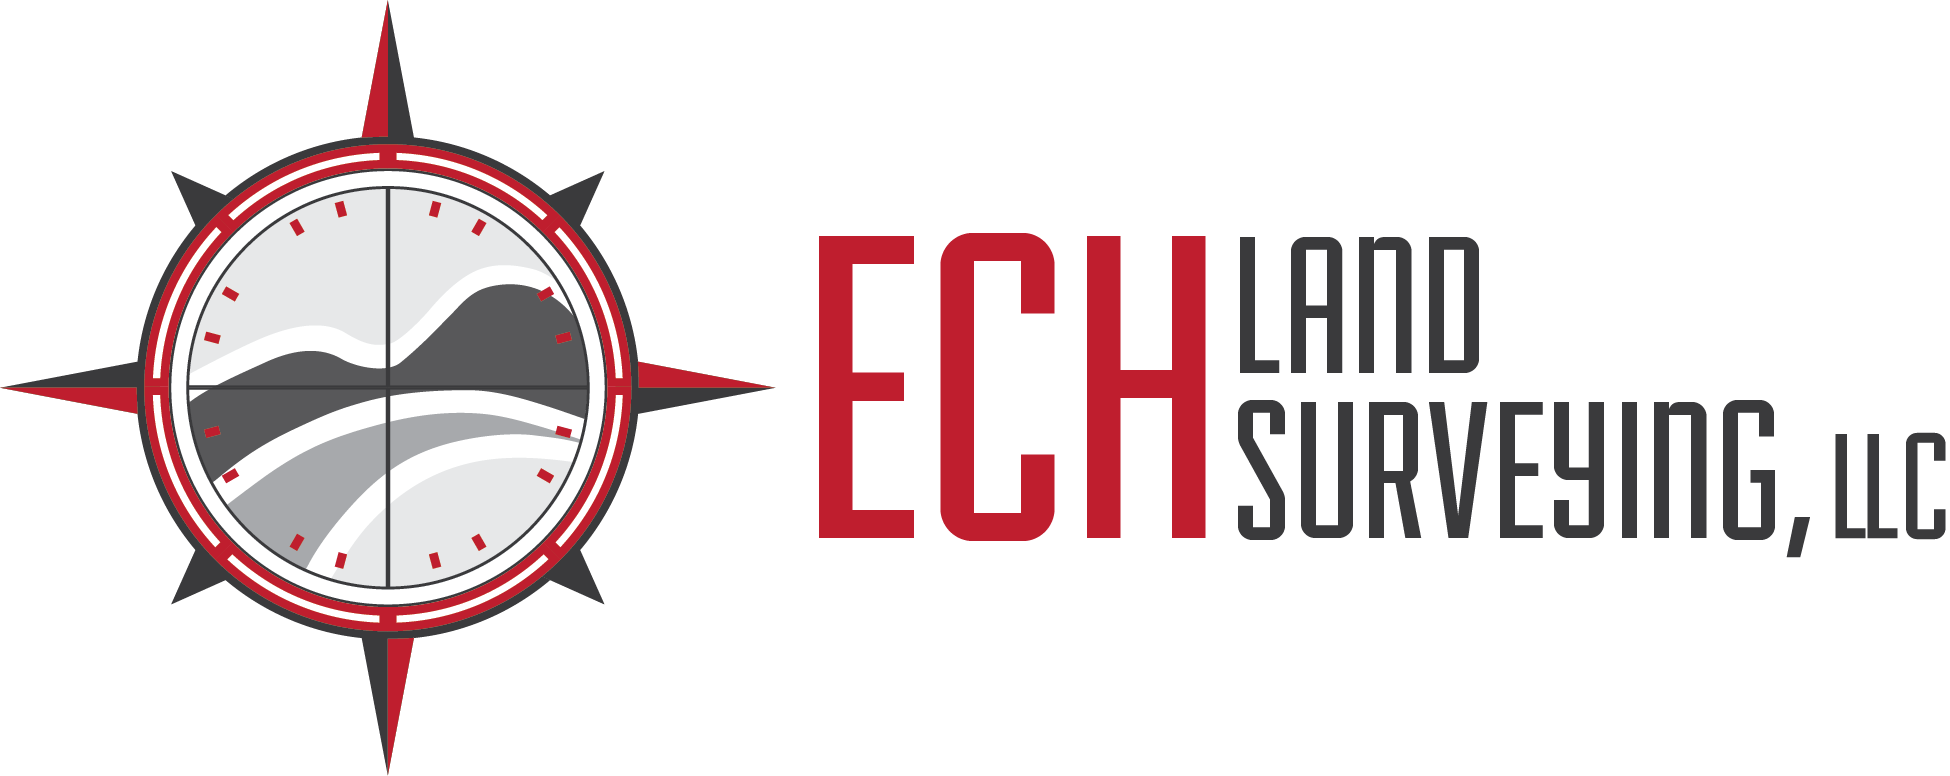 ECH Land Surveying Logo